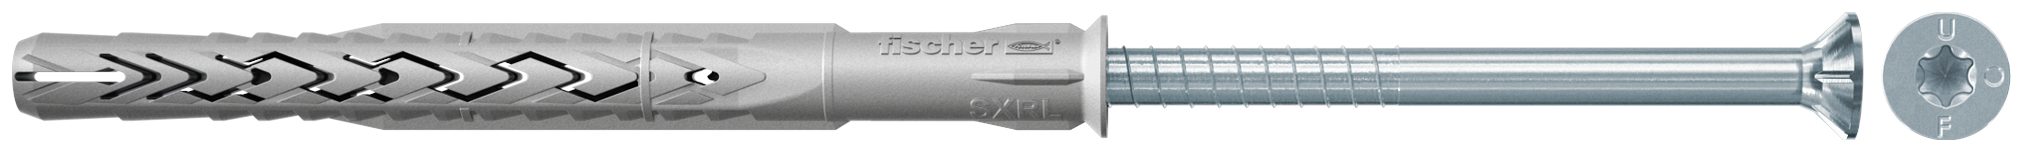 fischer Tasselli prolungati SXRL 8x120 T (1 Pz.) Tassello prolungato in nylon con marcatura CE con vite premontata T.S.P. impronta torx.